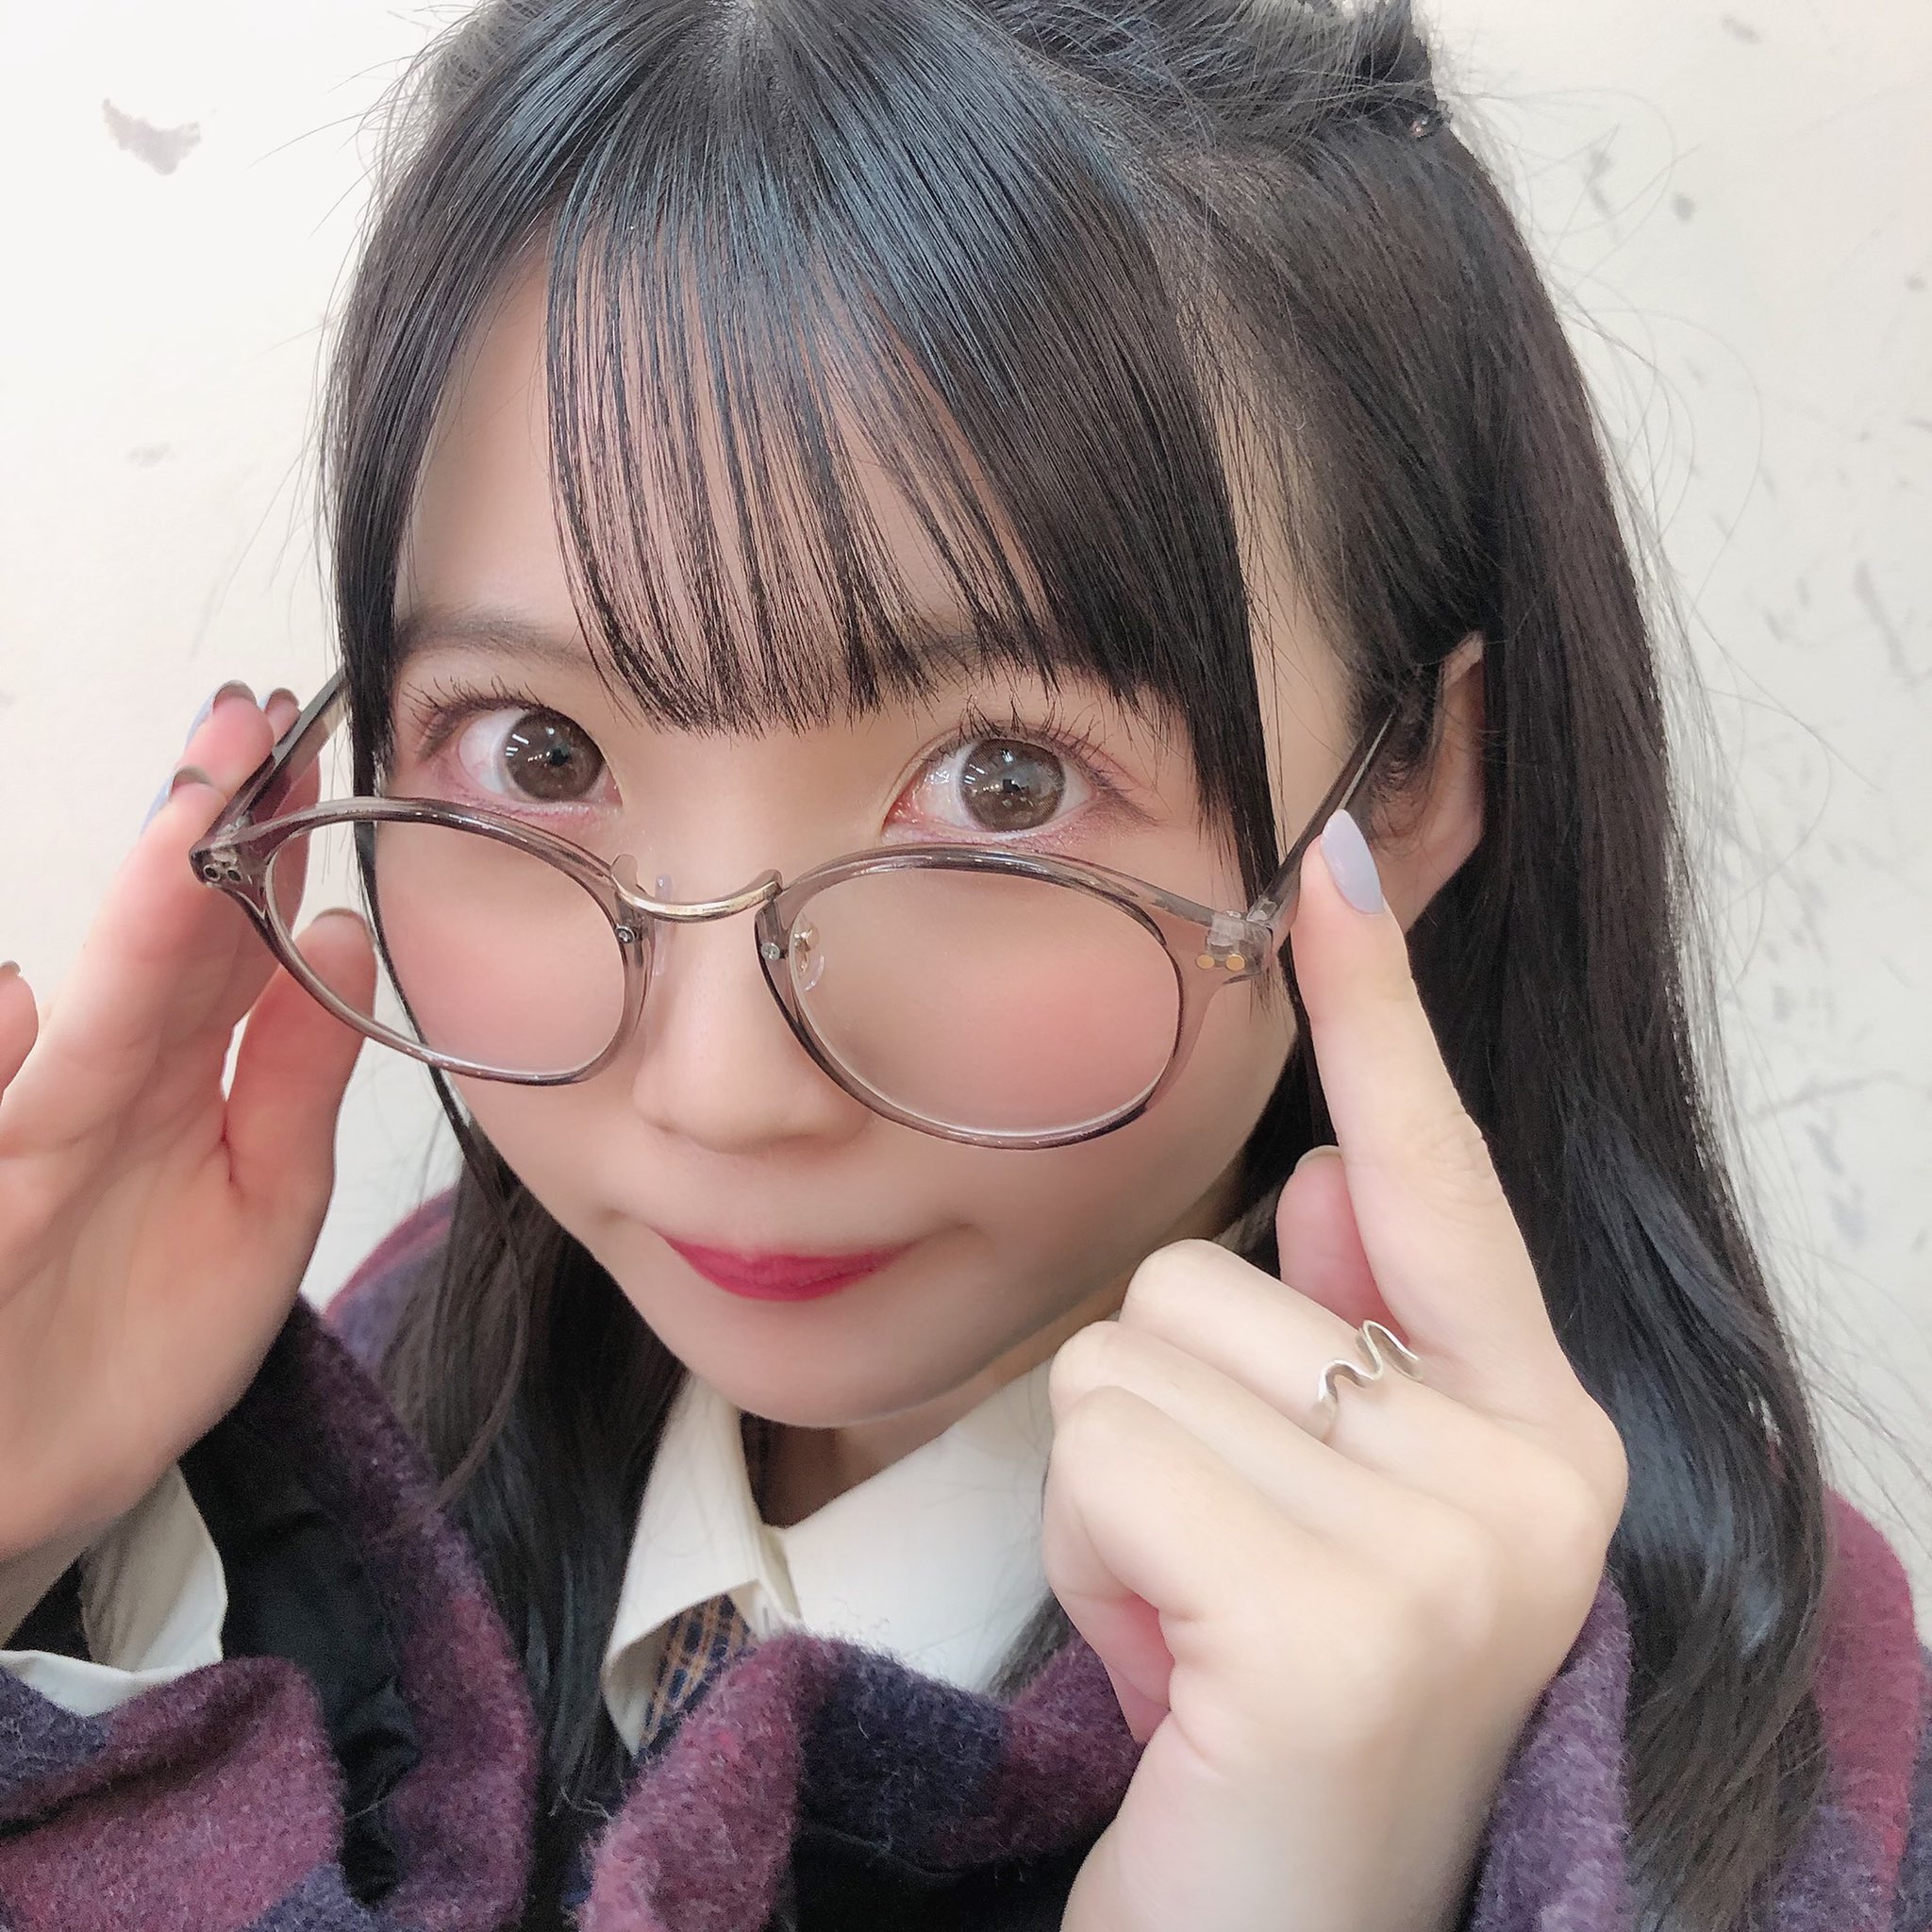 A-Pop Idols | Yukimura Karin